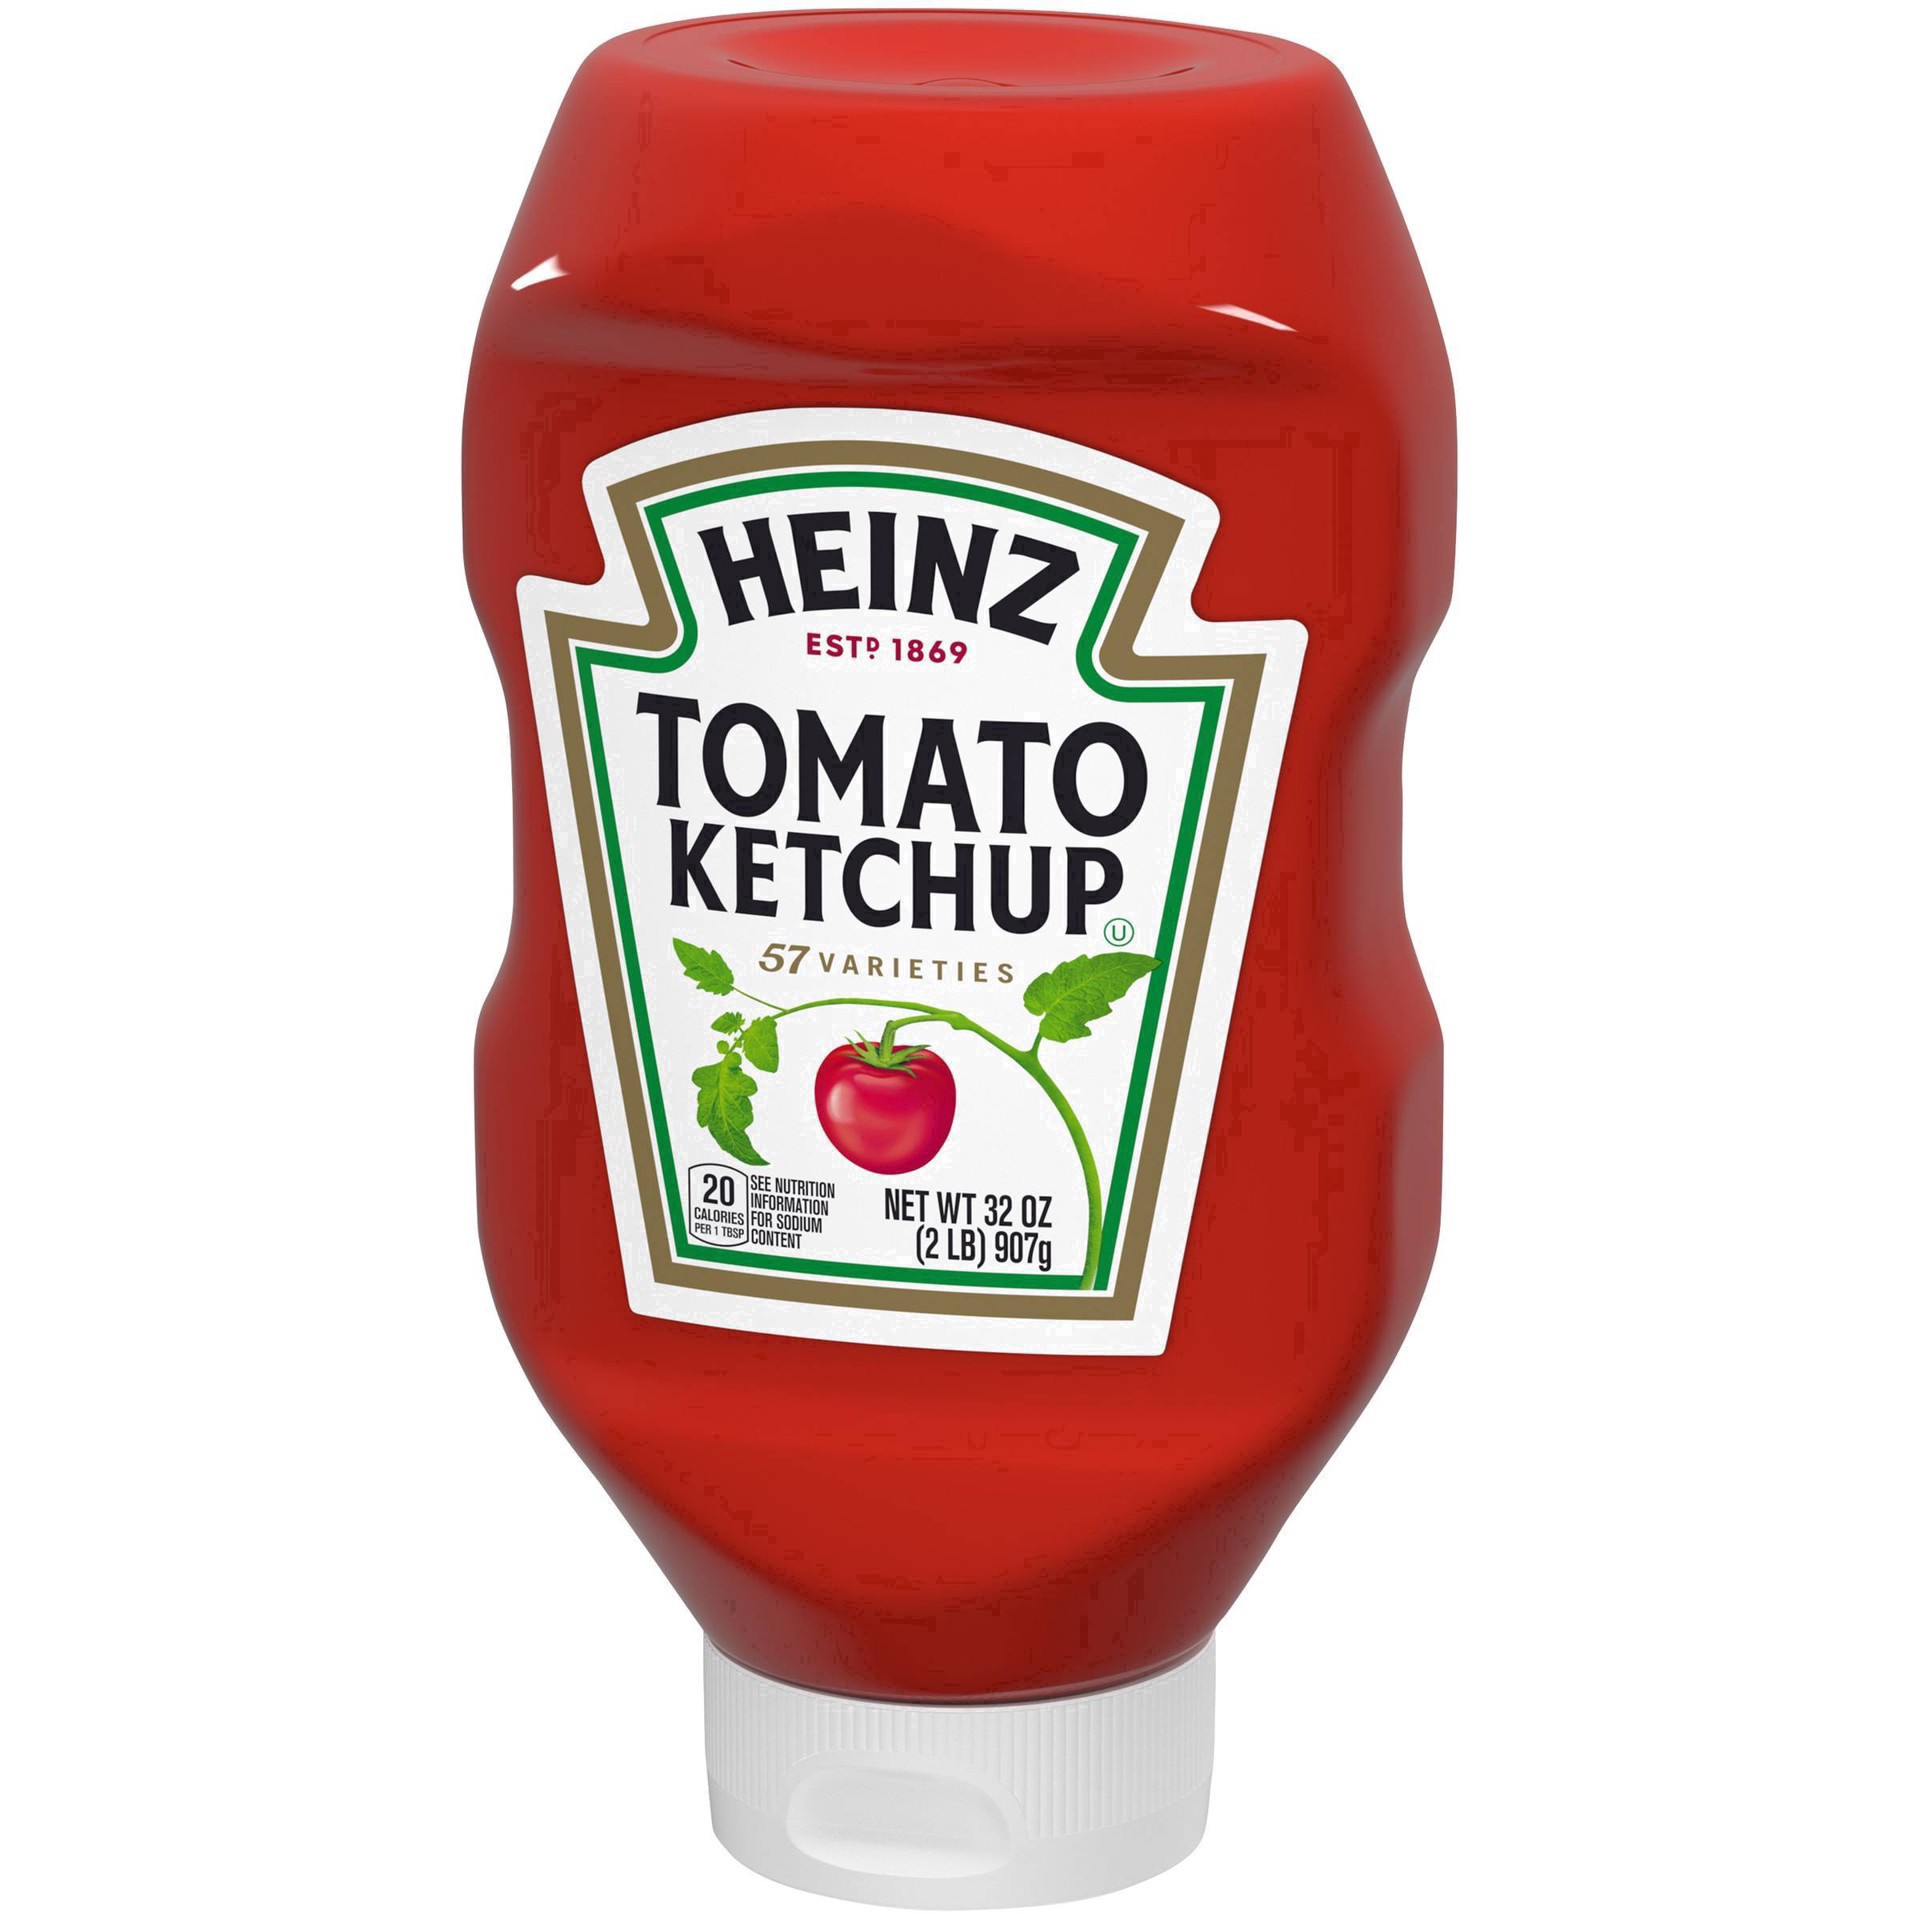 slide 25 of 86, Heinz Tomato Ketchup Bottle, 32 oz